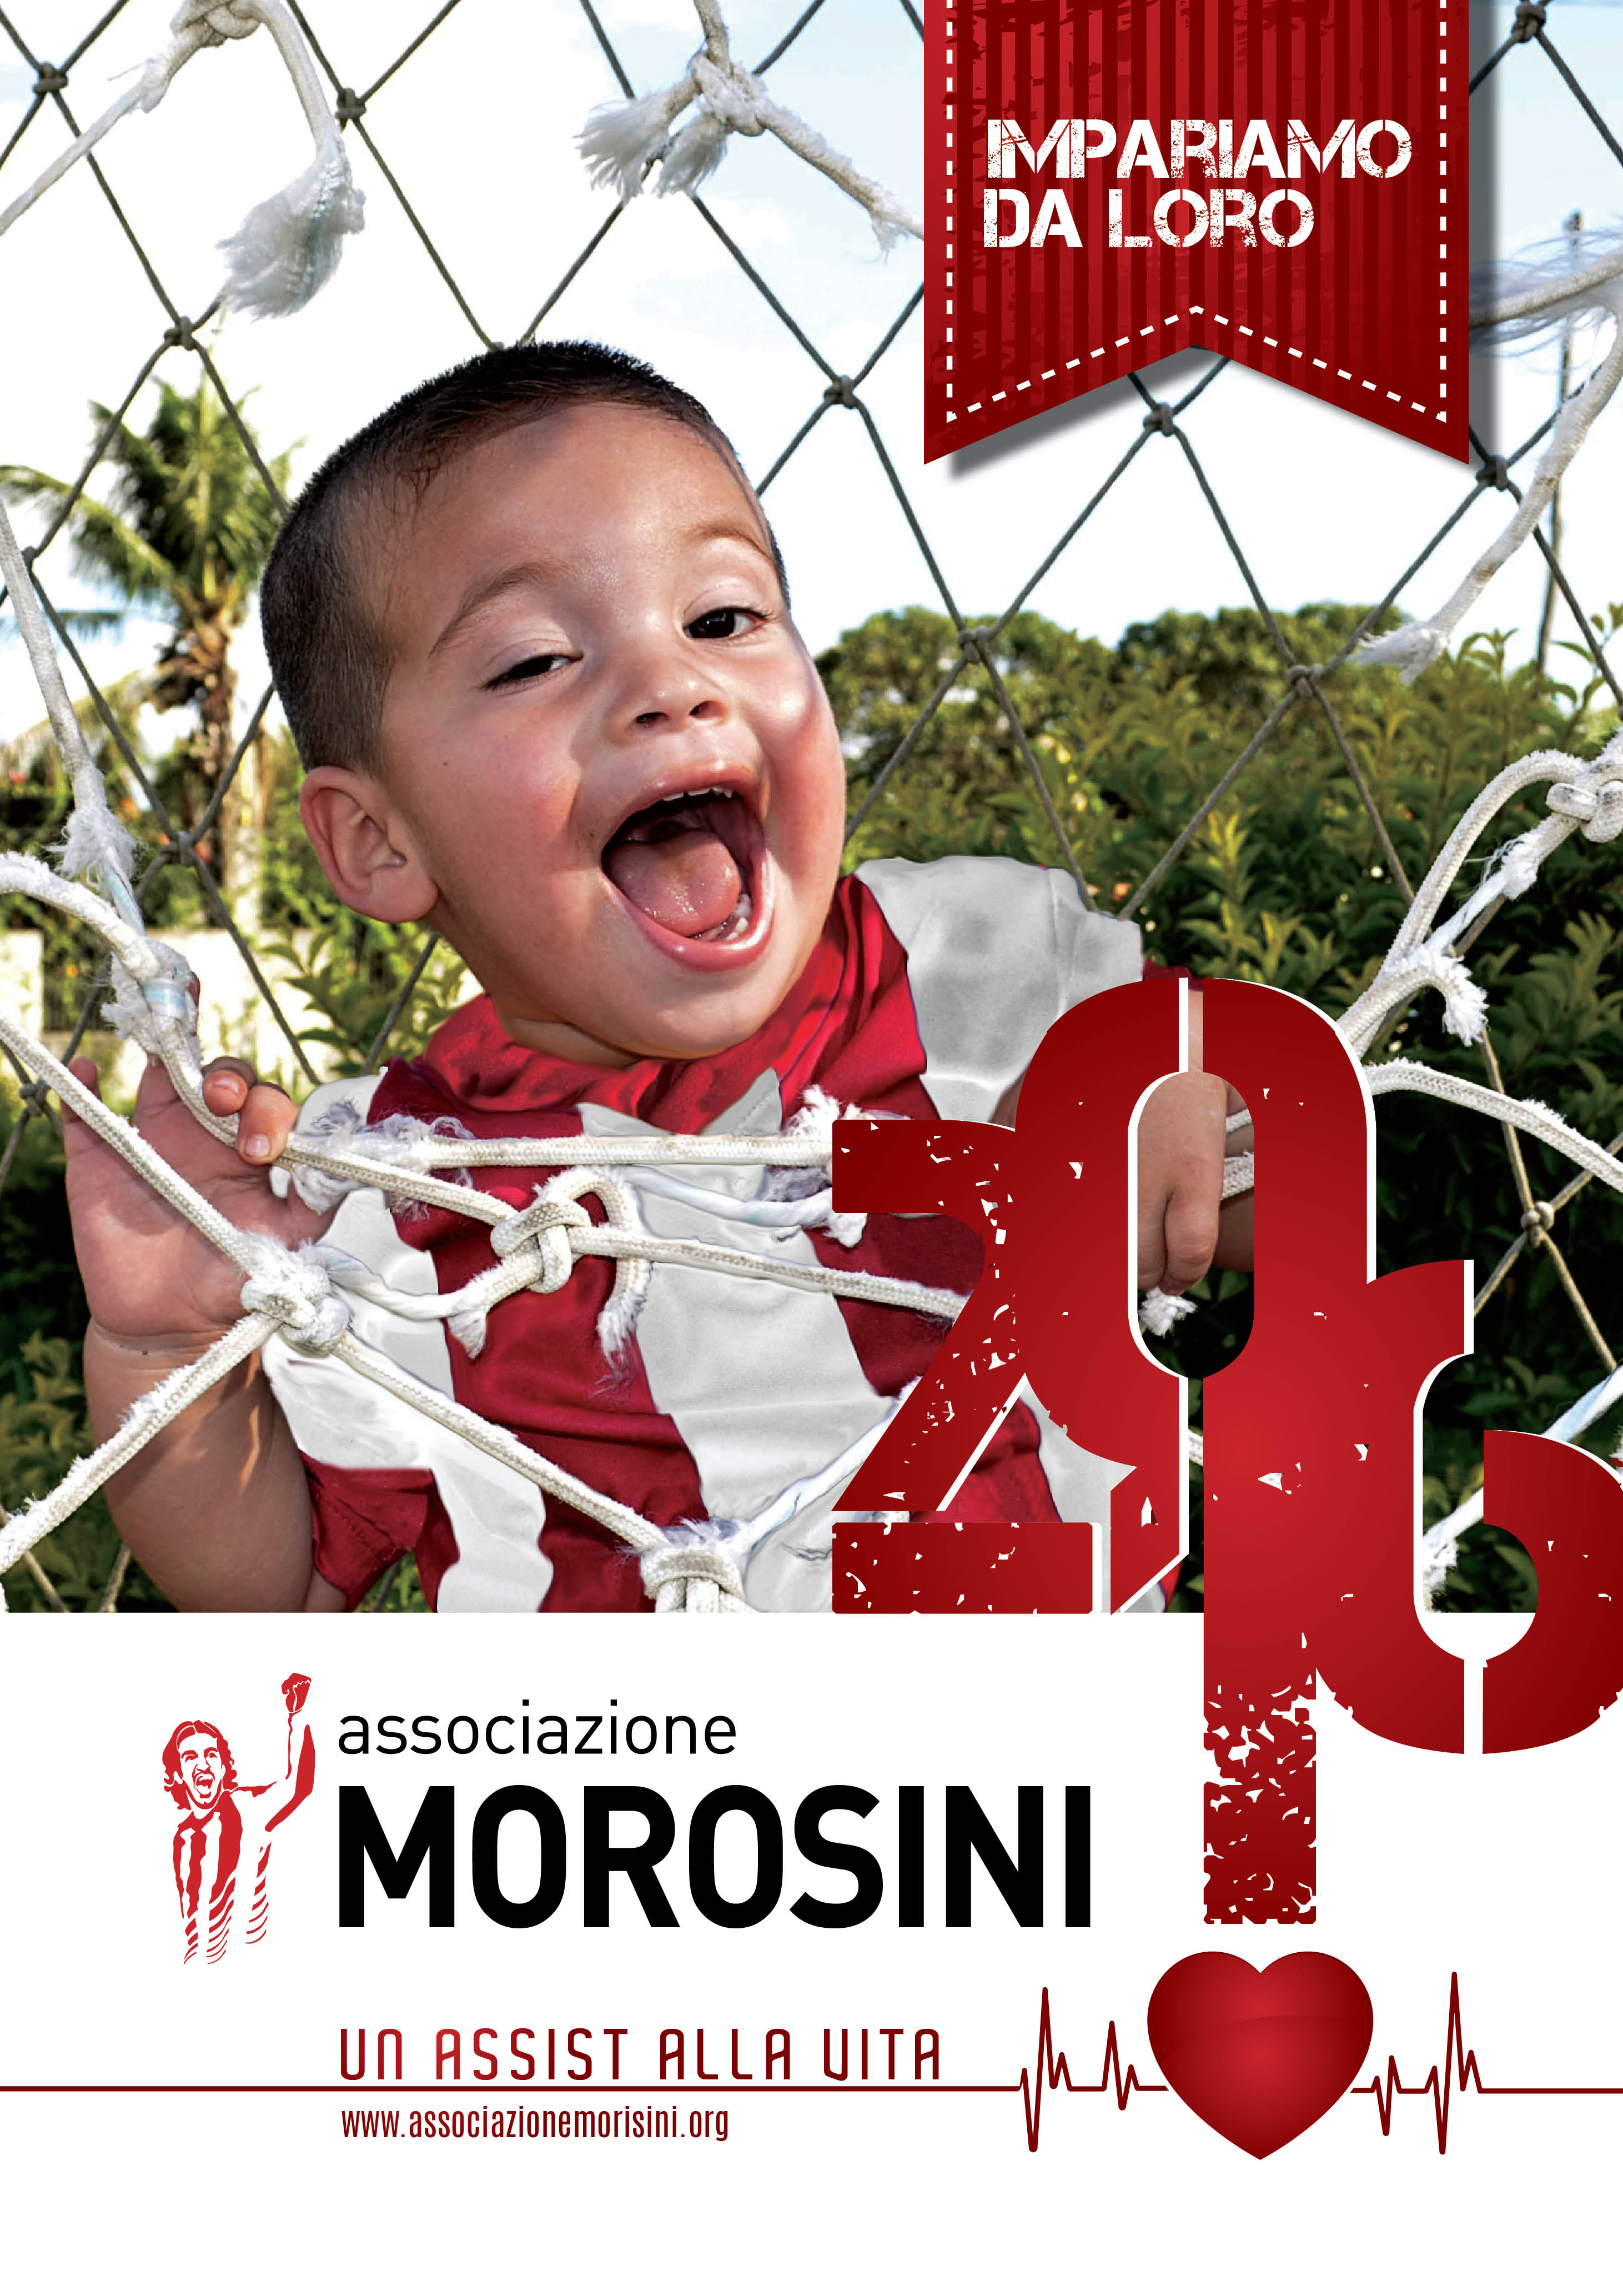 Associazione Morosini: il calendario a sostegno della rianimazione cardiopolmonare